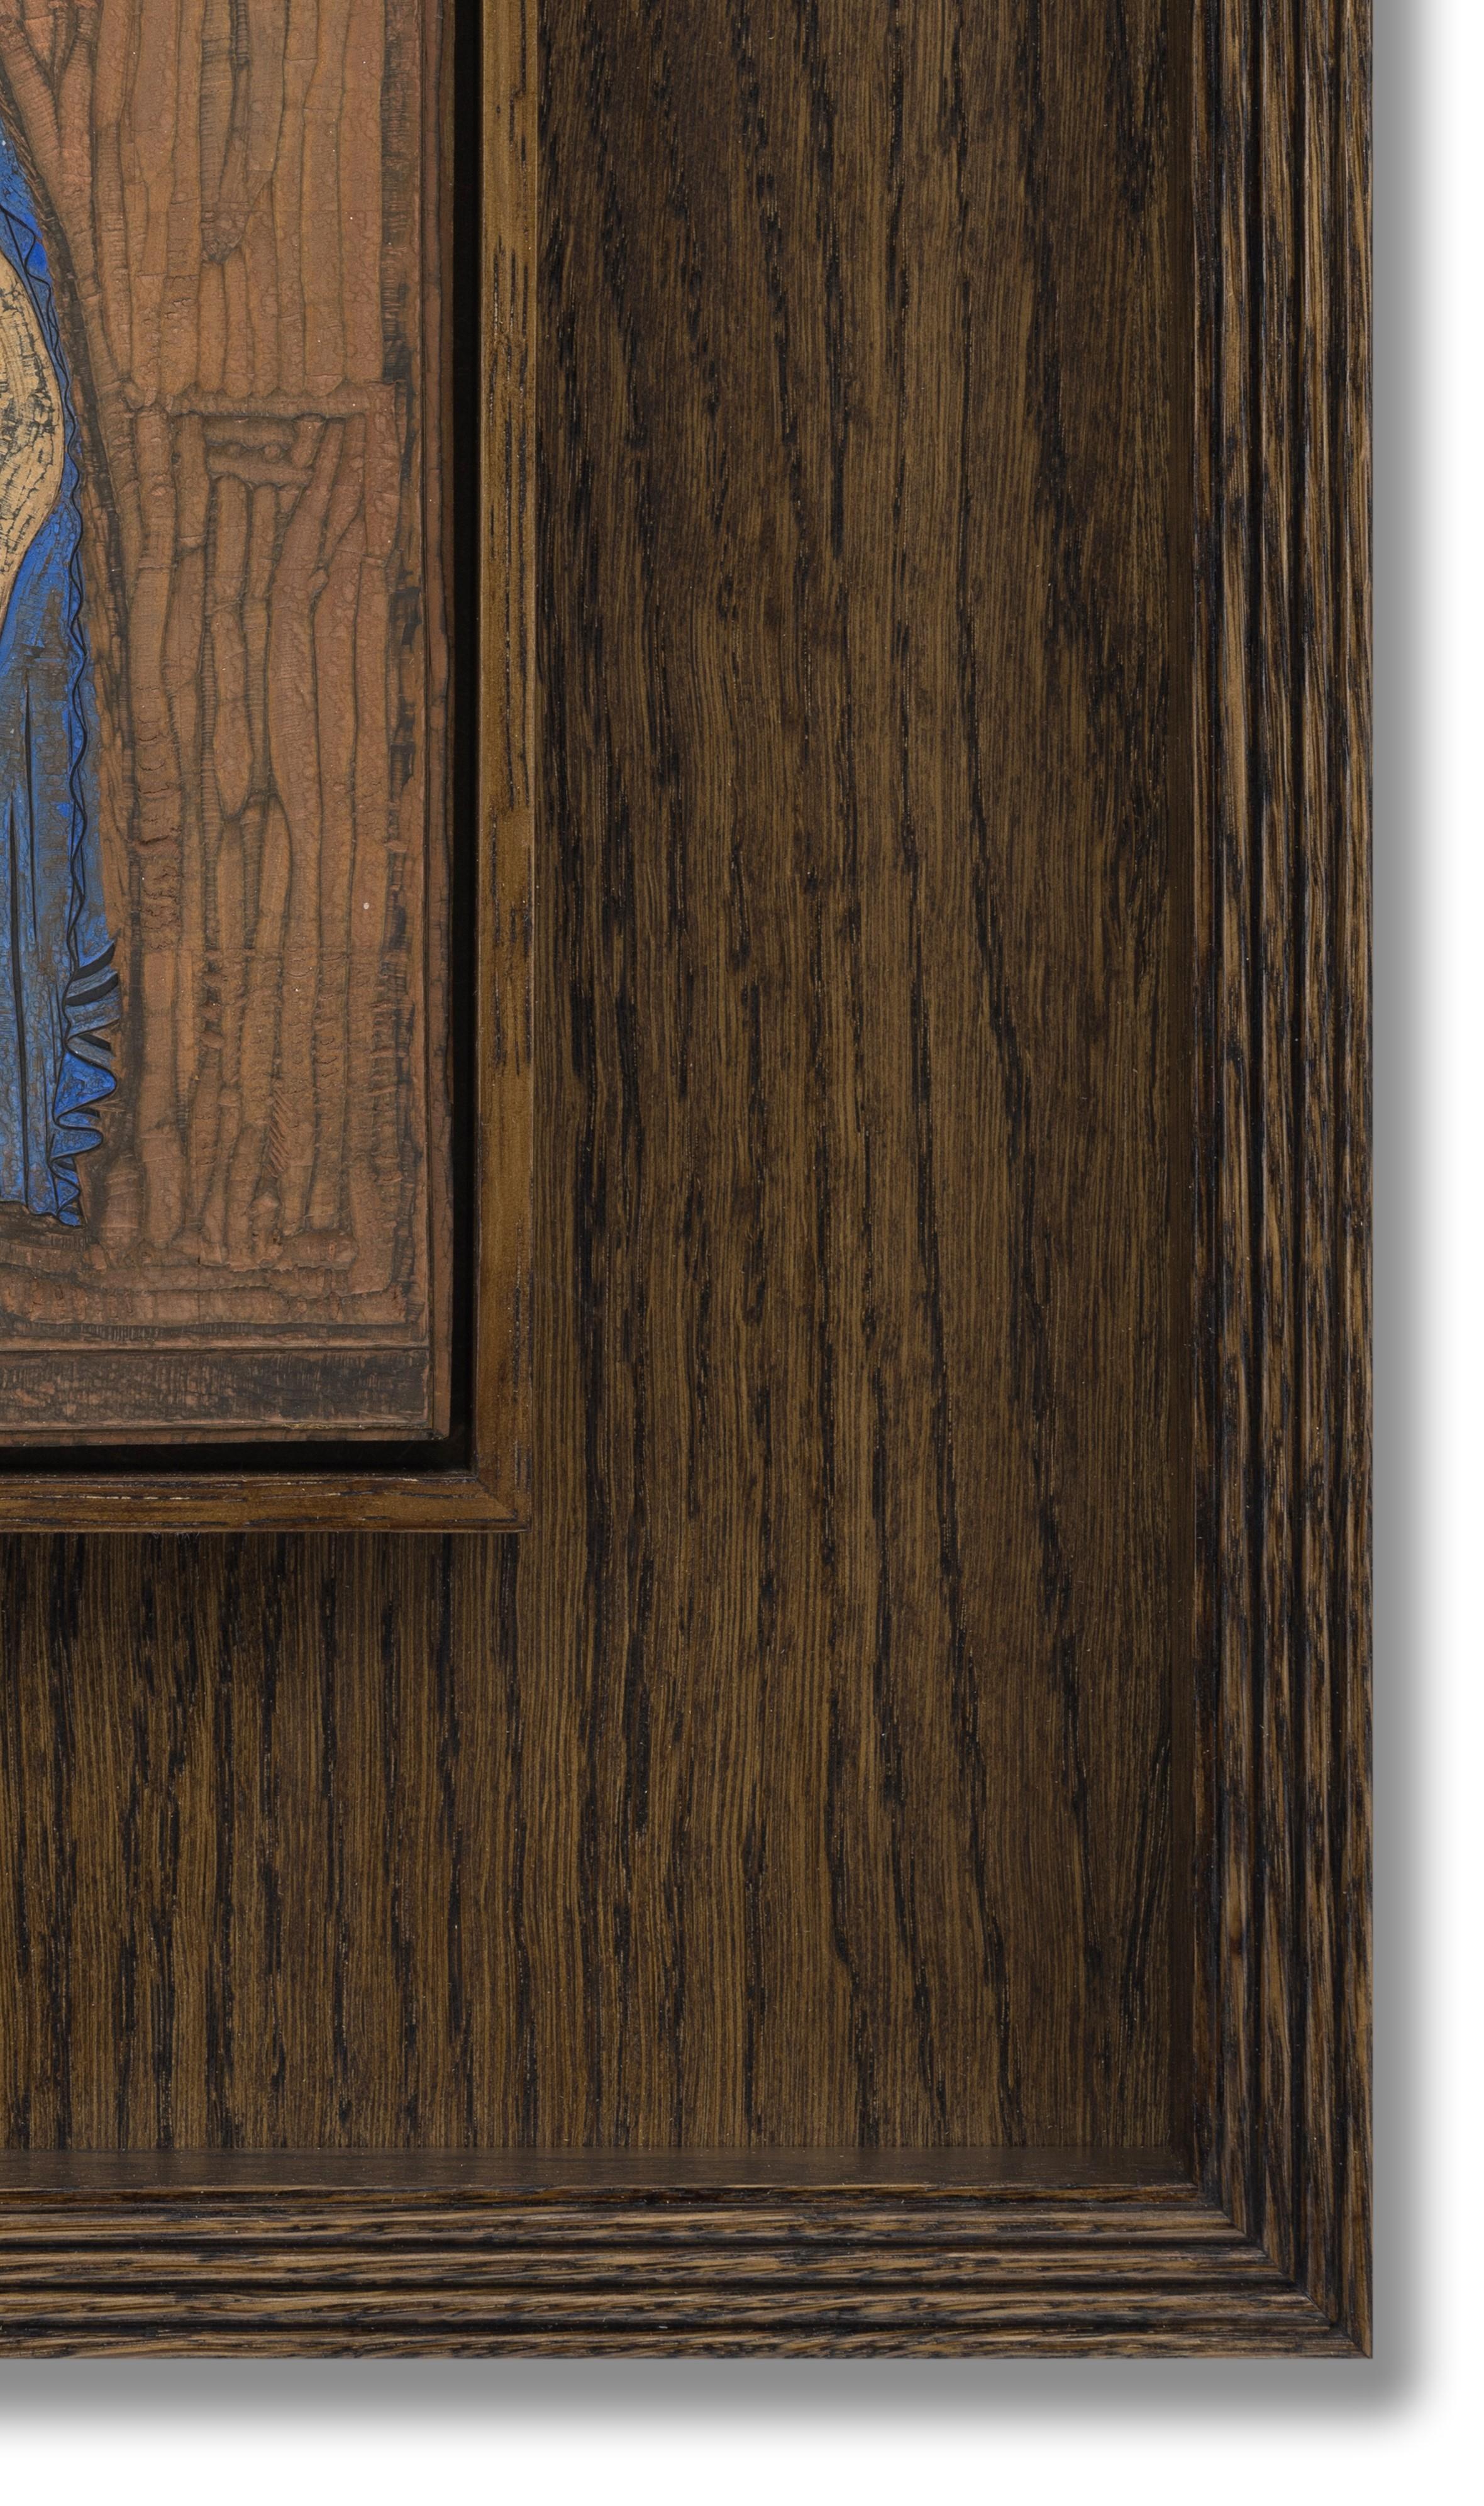 Bemaltes, graviertes Holz, 20,5 cm x 13,5 cm, (41 cm x 34 cm gerahmt).  (Provenienz: Félix Marcilhac, ein französischer Kunsthistoriker, der Objekte des Art déco sammelte; Sotheby's, Paris, 11. März 2014)

Der aus der Schweiz stammende Maler,